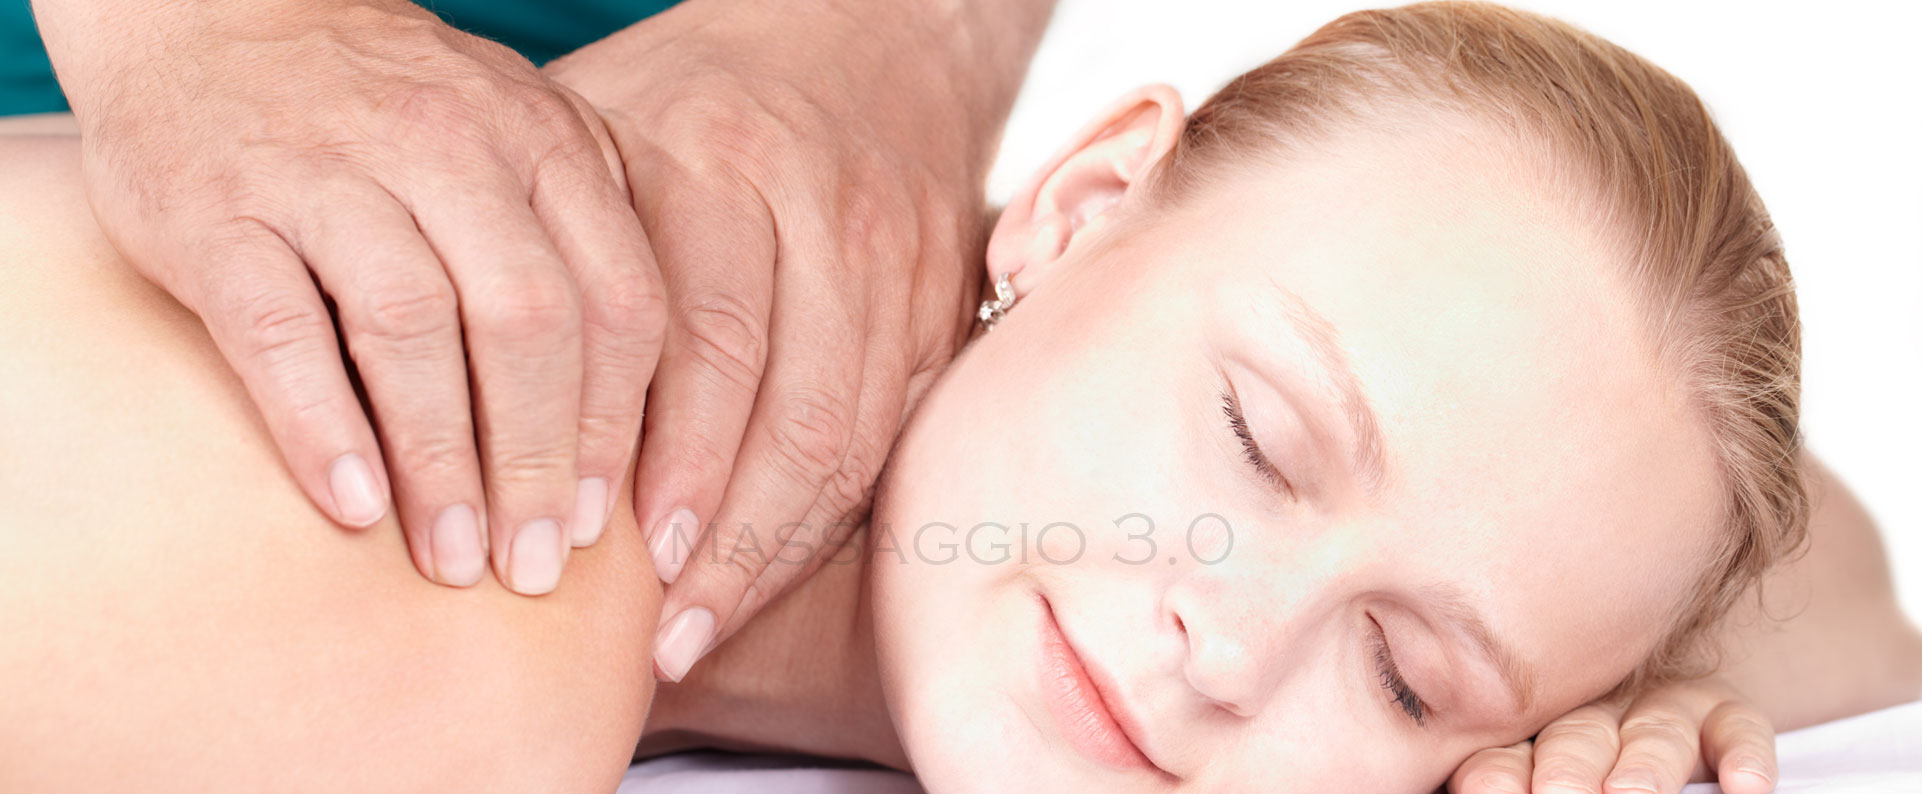 come effettuare il massaggio californiano